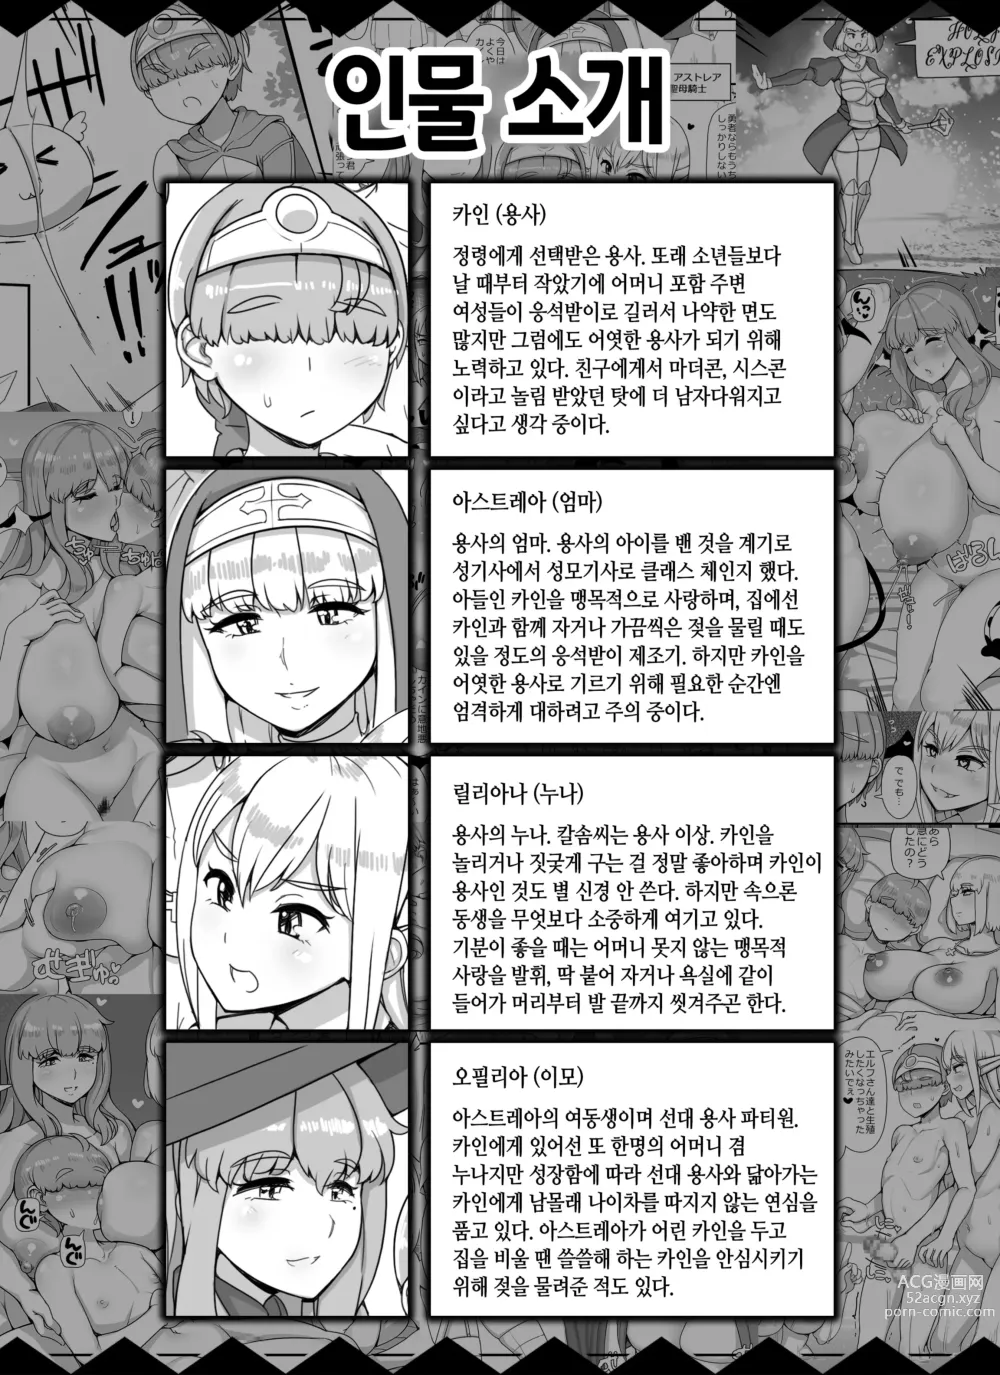 Page 2 of doujinshi 엄마누나이모가 서큐버스인 쇼타 용사 하렘 파티